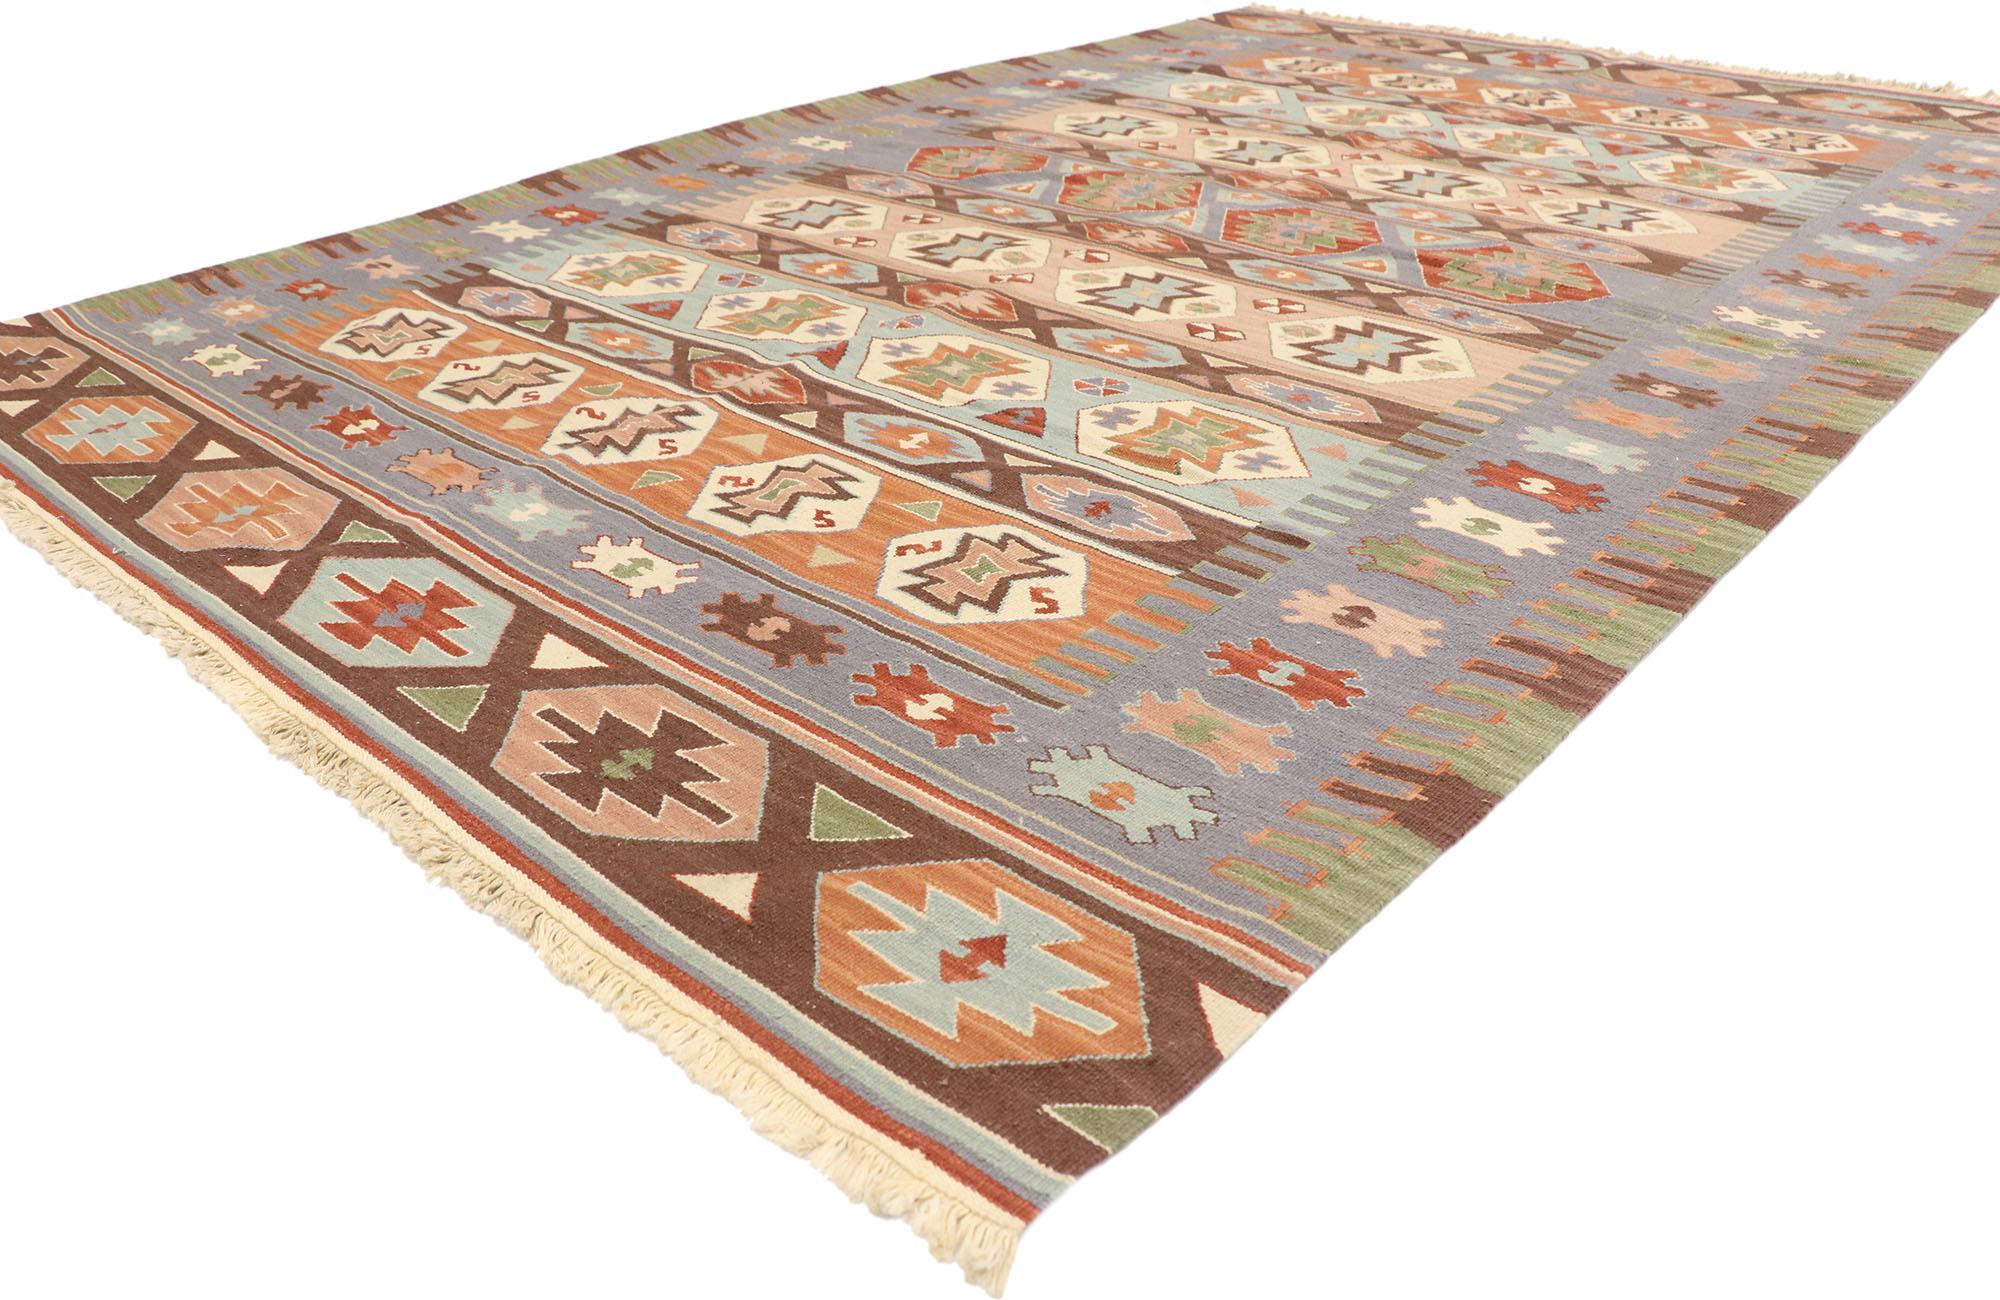 77931 Vieux tapis persan Shiraz Kilim avec style tribal bohème 05'07 x 08'07. Plein de petits détails et d'un design expressif audacieux combiné à des couleurs contrastées et à un style tribal, ce tapis Kilim Shiraz Persan vintage en laine tissé à